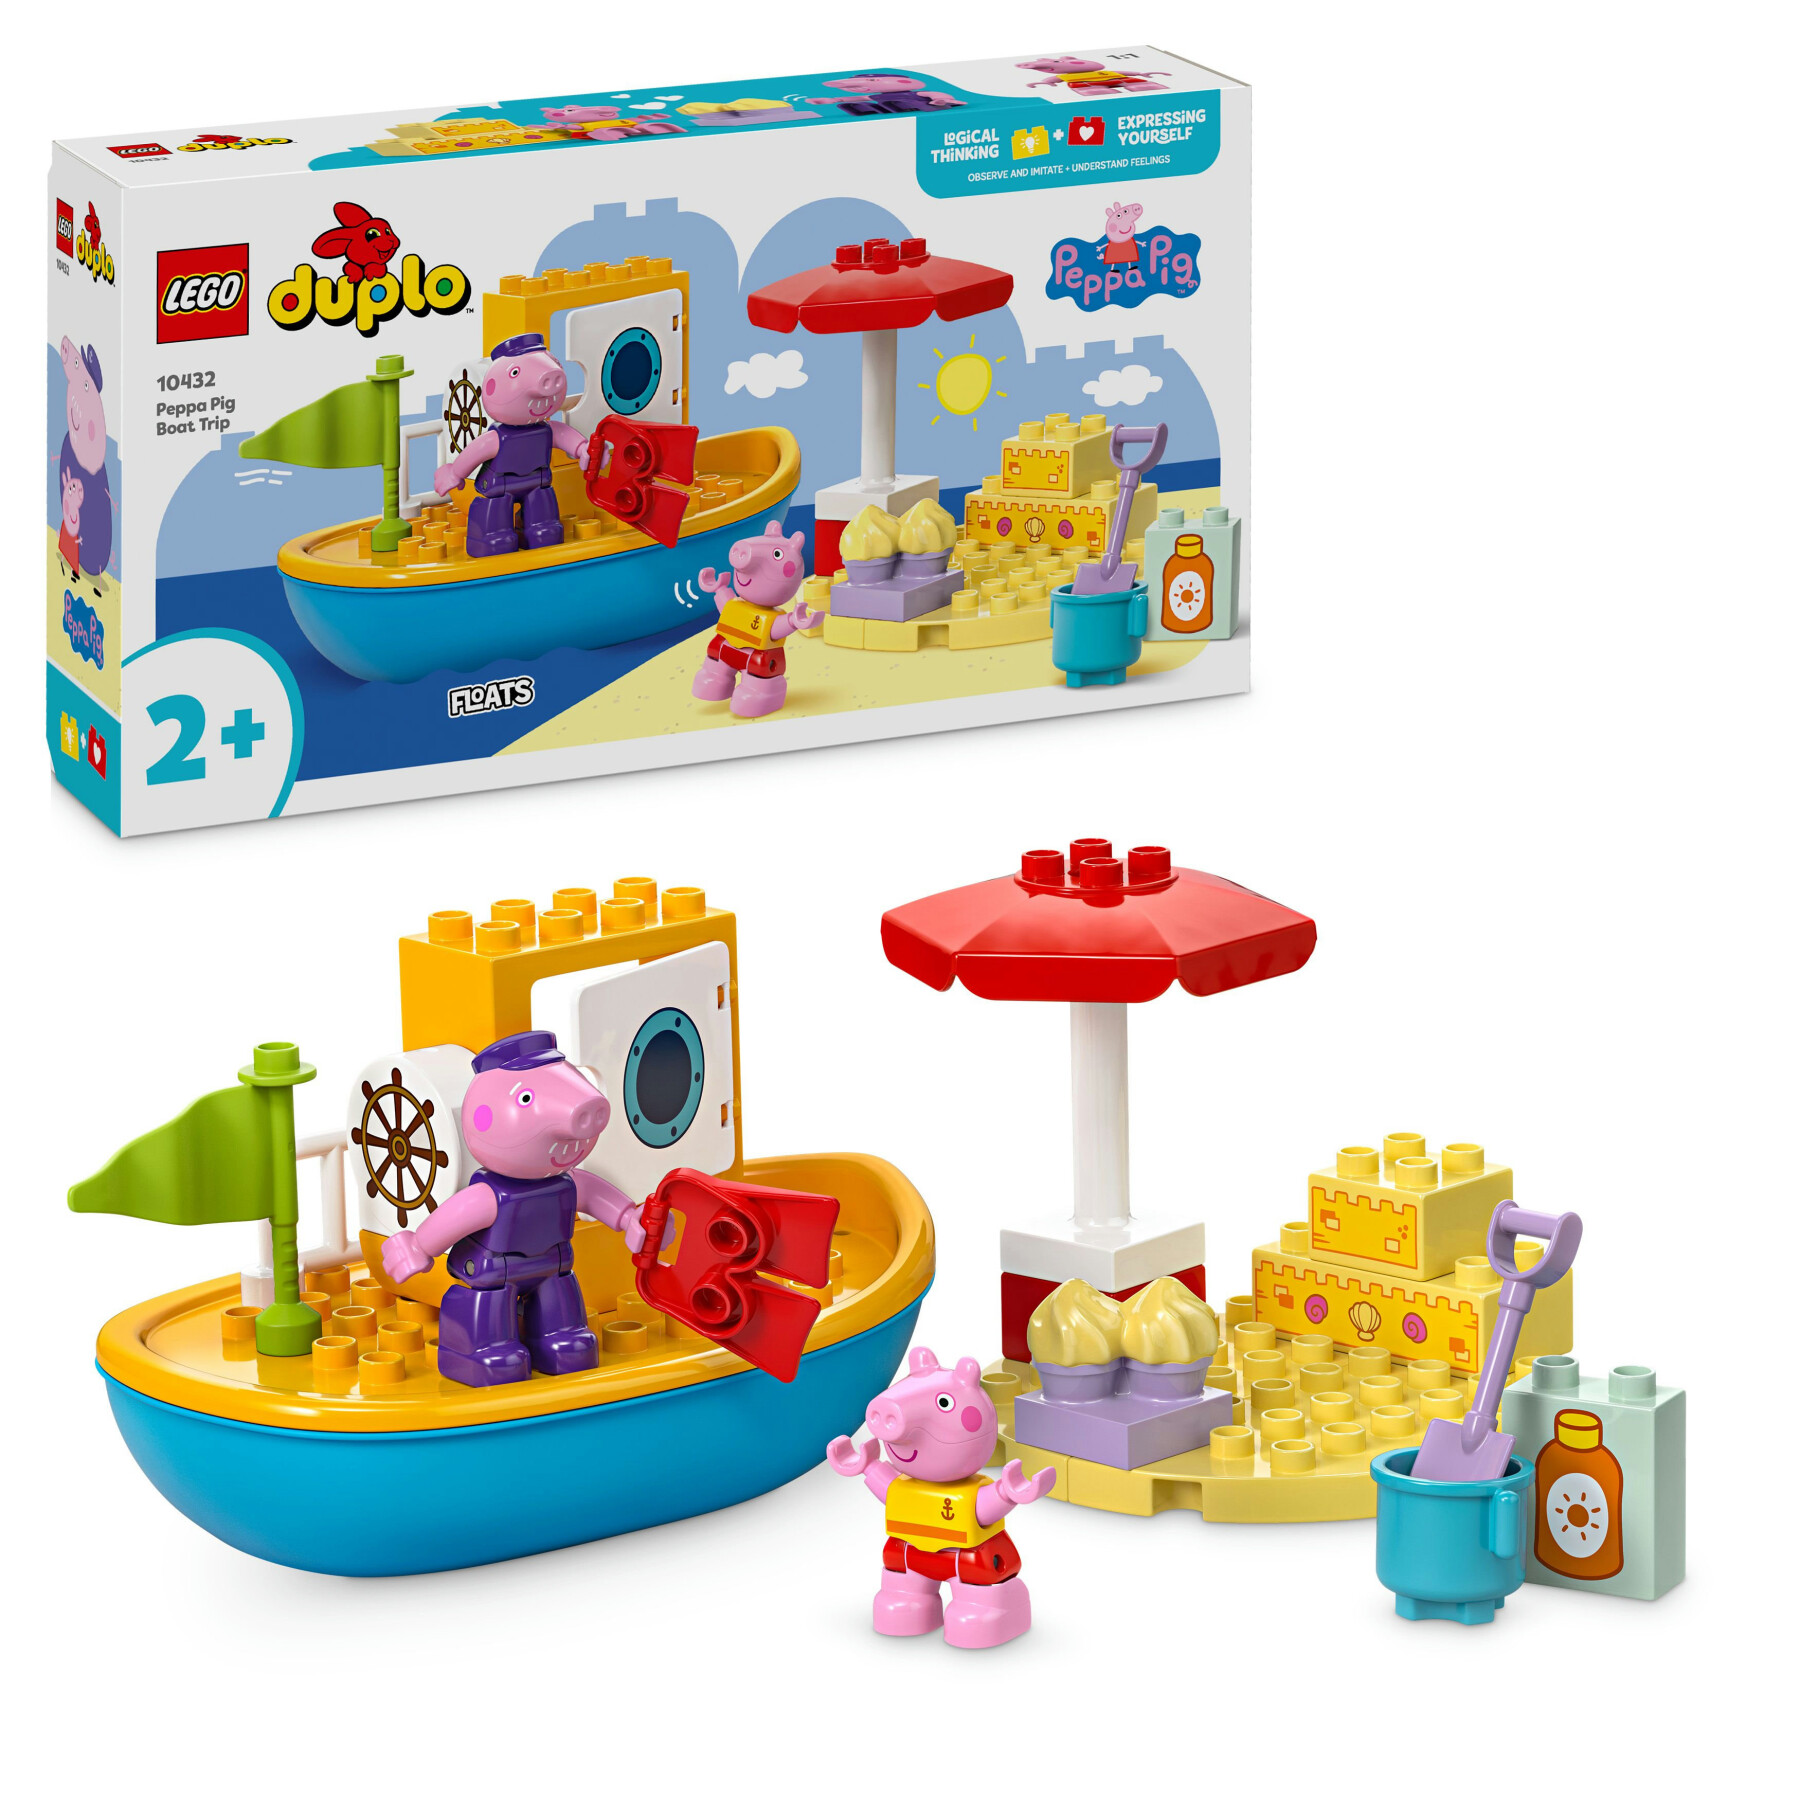 Lego duplo 10432 viaggio in barca di peppa pig, giochi educativi per bambini 2+ con 2 personaggi, idea regalo di compleanno - LEGO DUPLO, PEPPA PIG